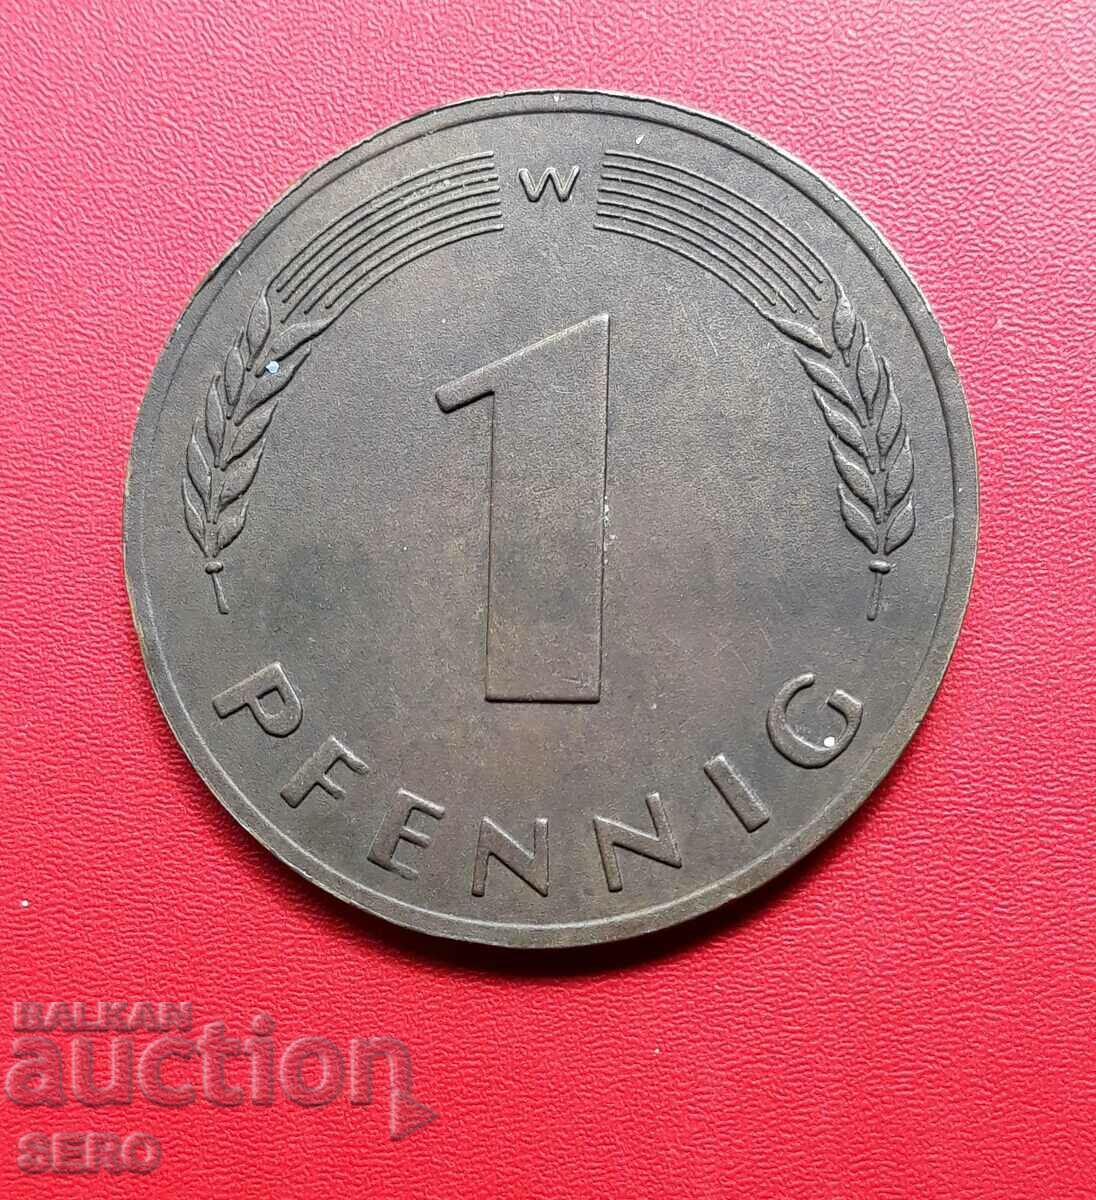 Germany-medal/plaque/-1 huge pfennig 1984